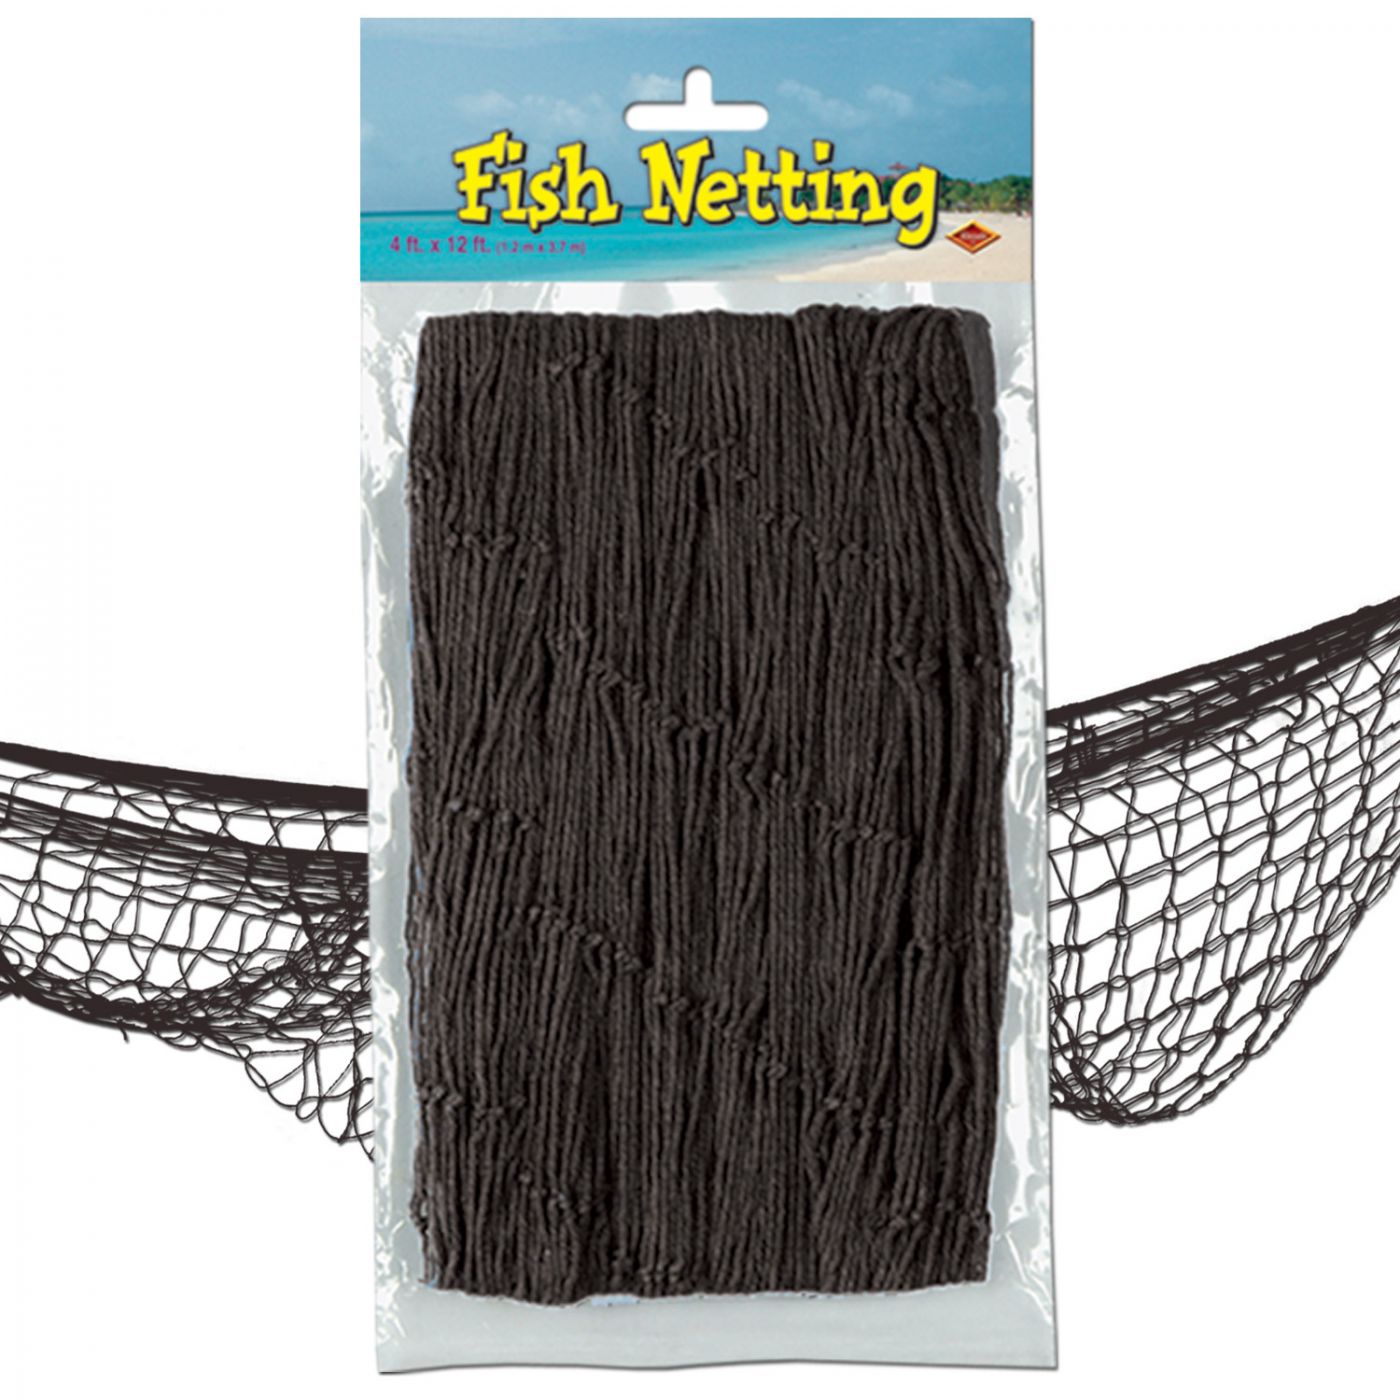 Fish Netting image